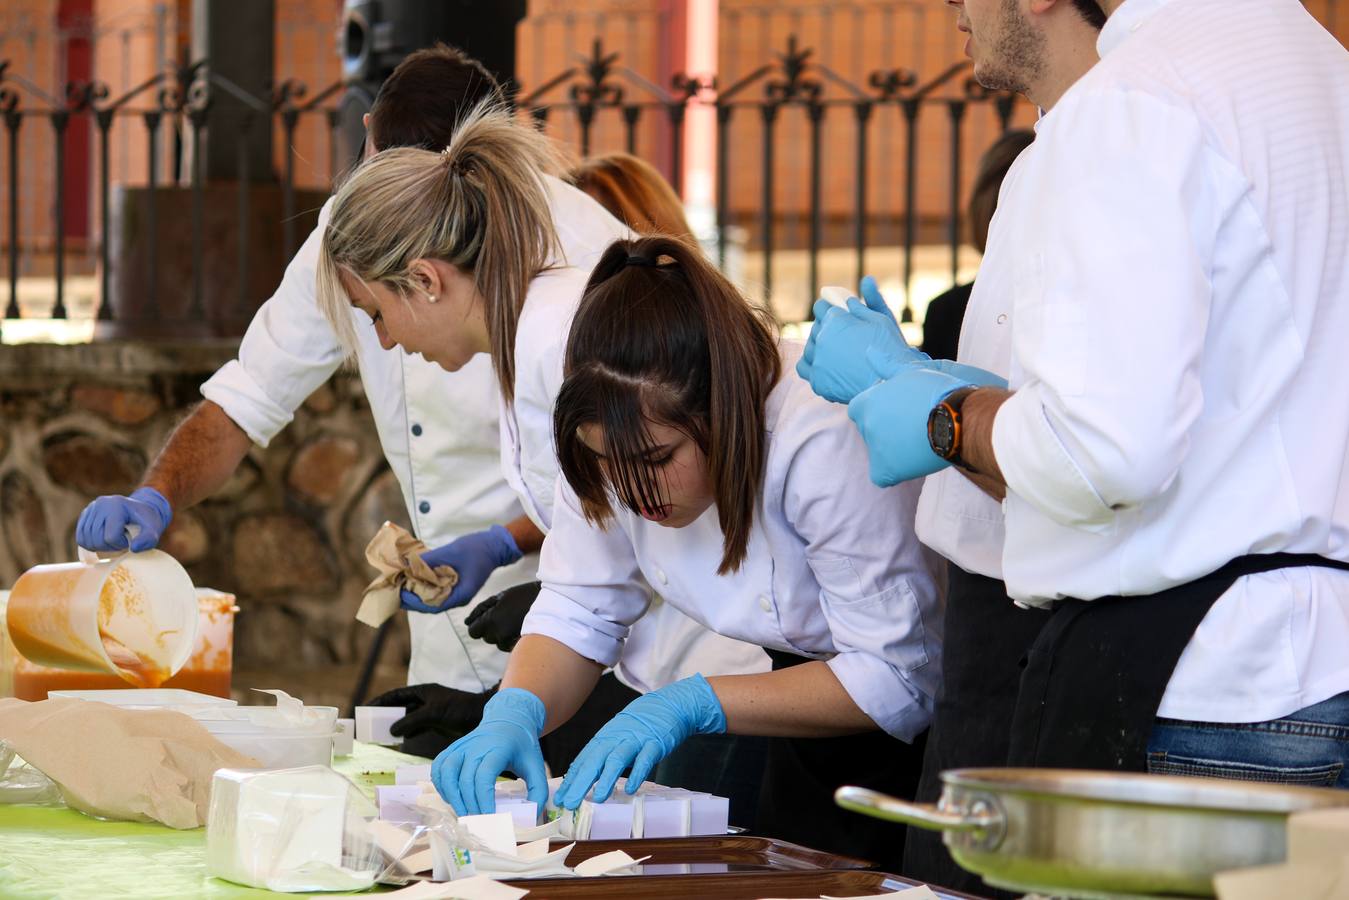 La Escuela de Hostelería de Extremadura ofrece distintas tapas con jamón ibérico